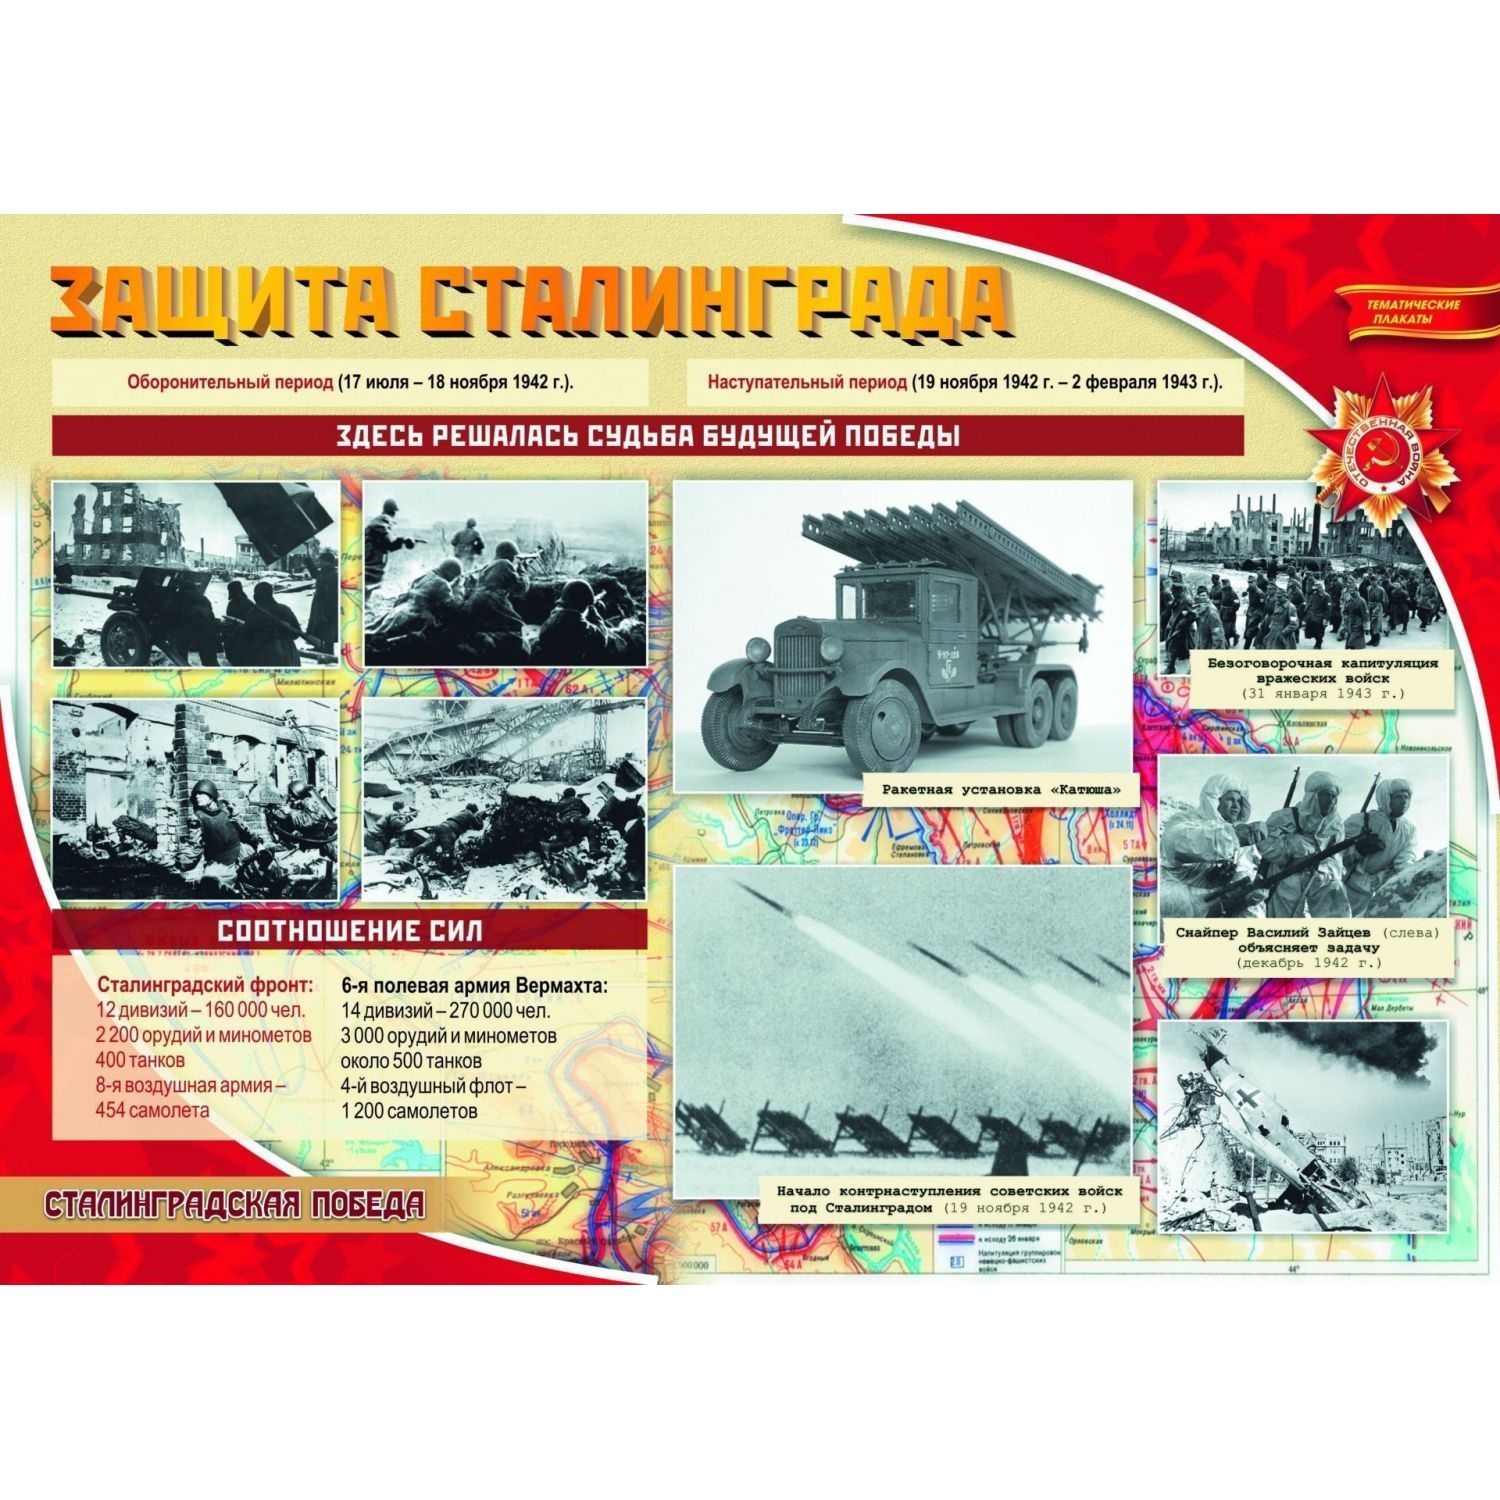 Комплект плакатов "Сталинградская победа": 4 плаката с методическим сопровождением